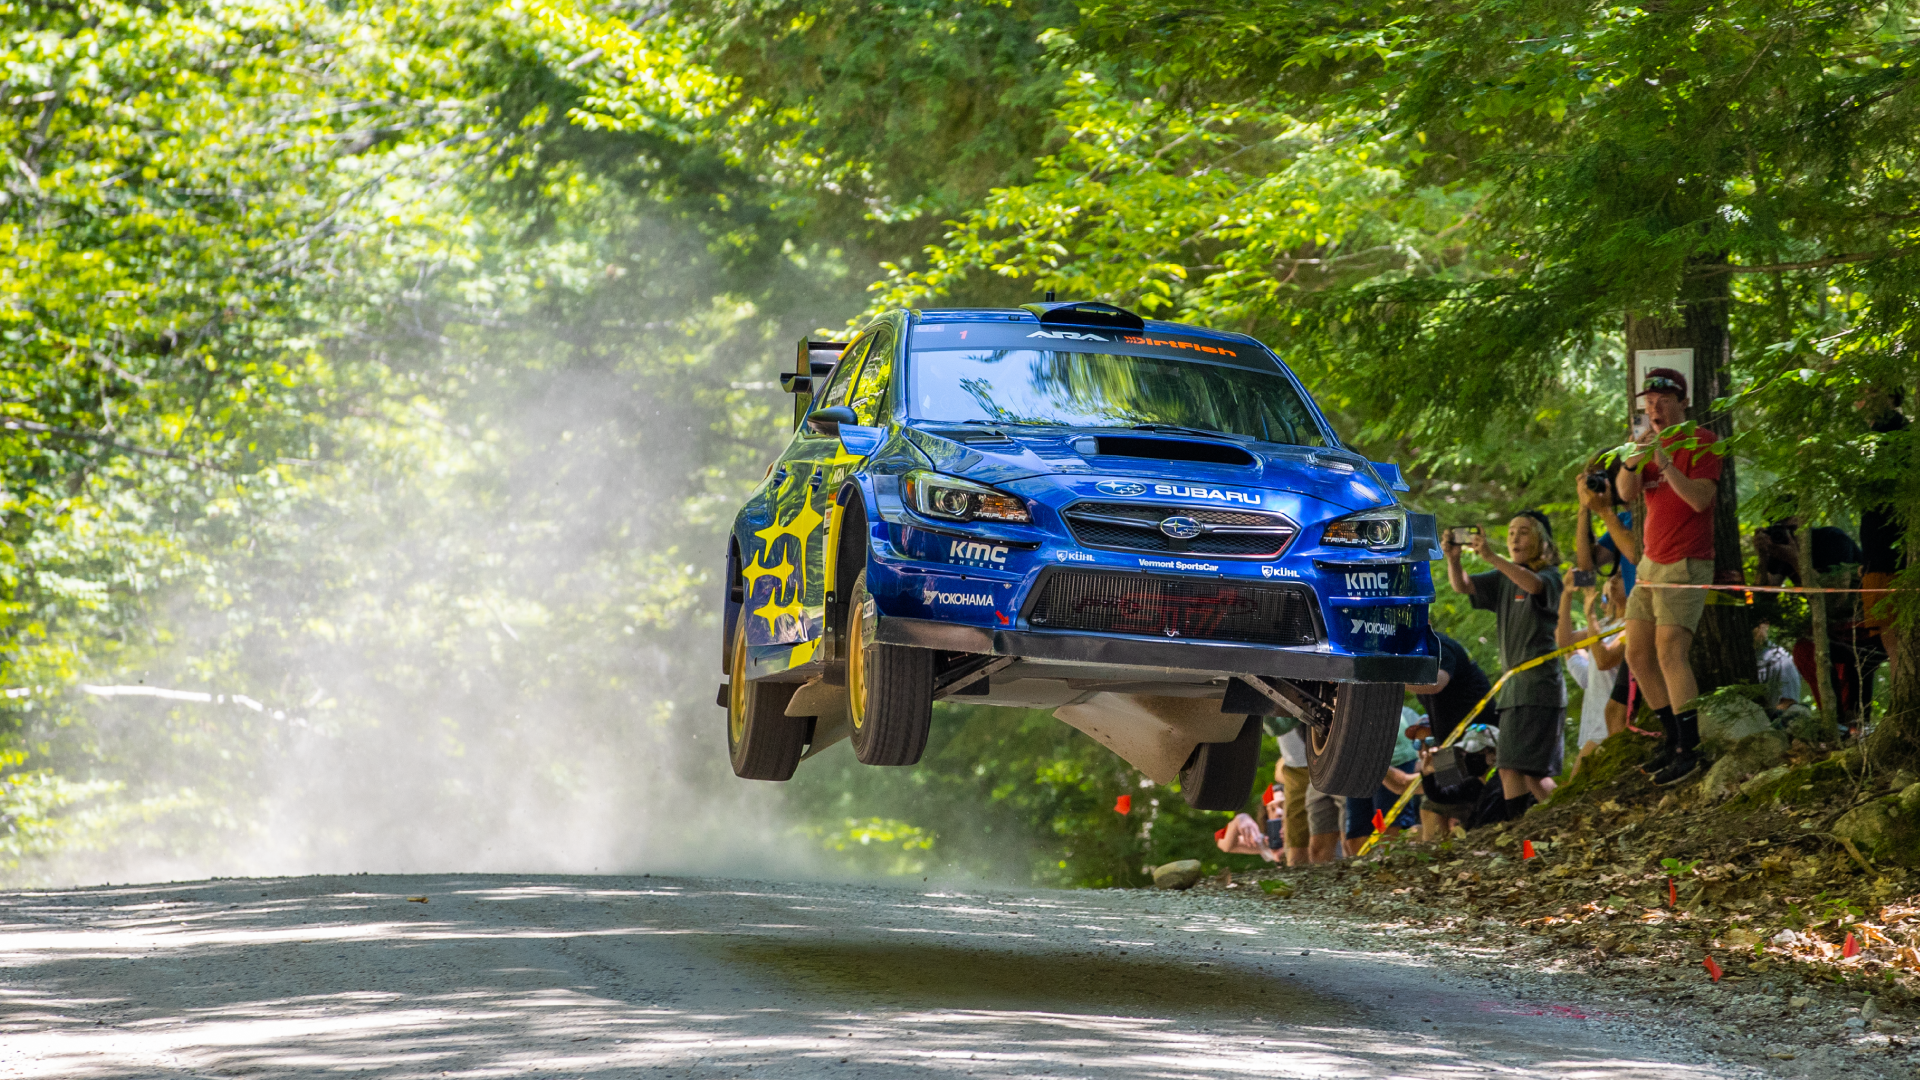 Subaru racecar leaping